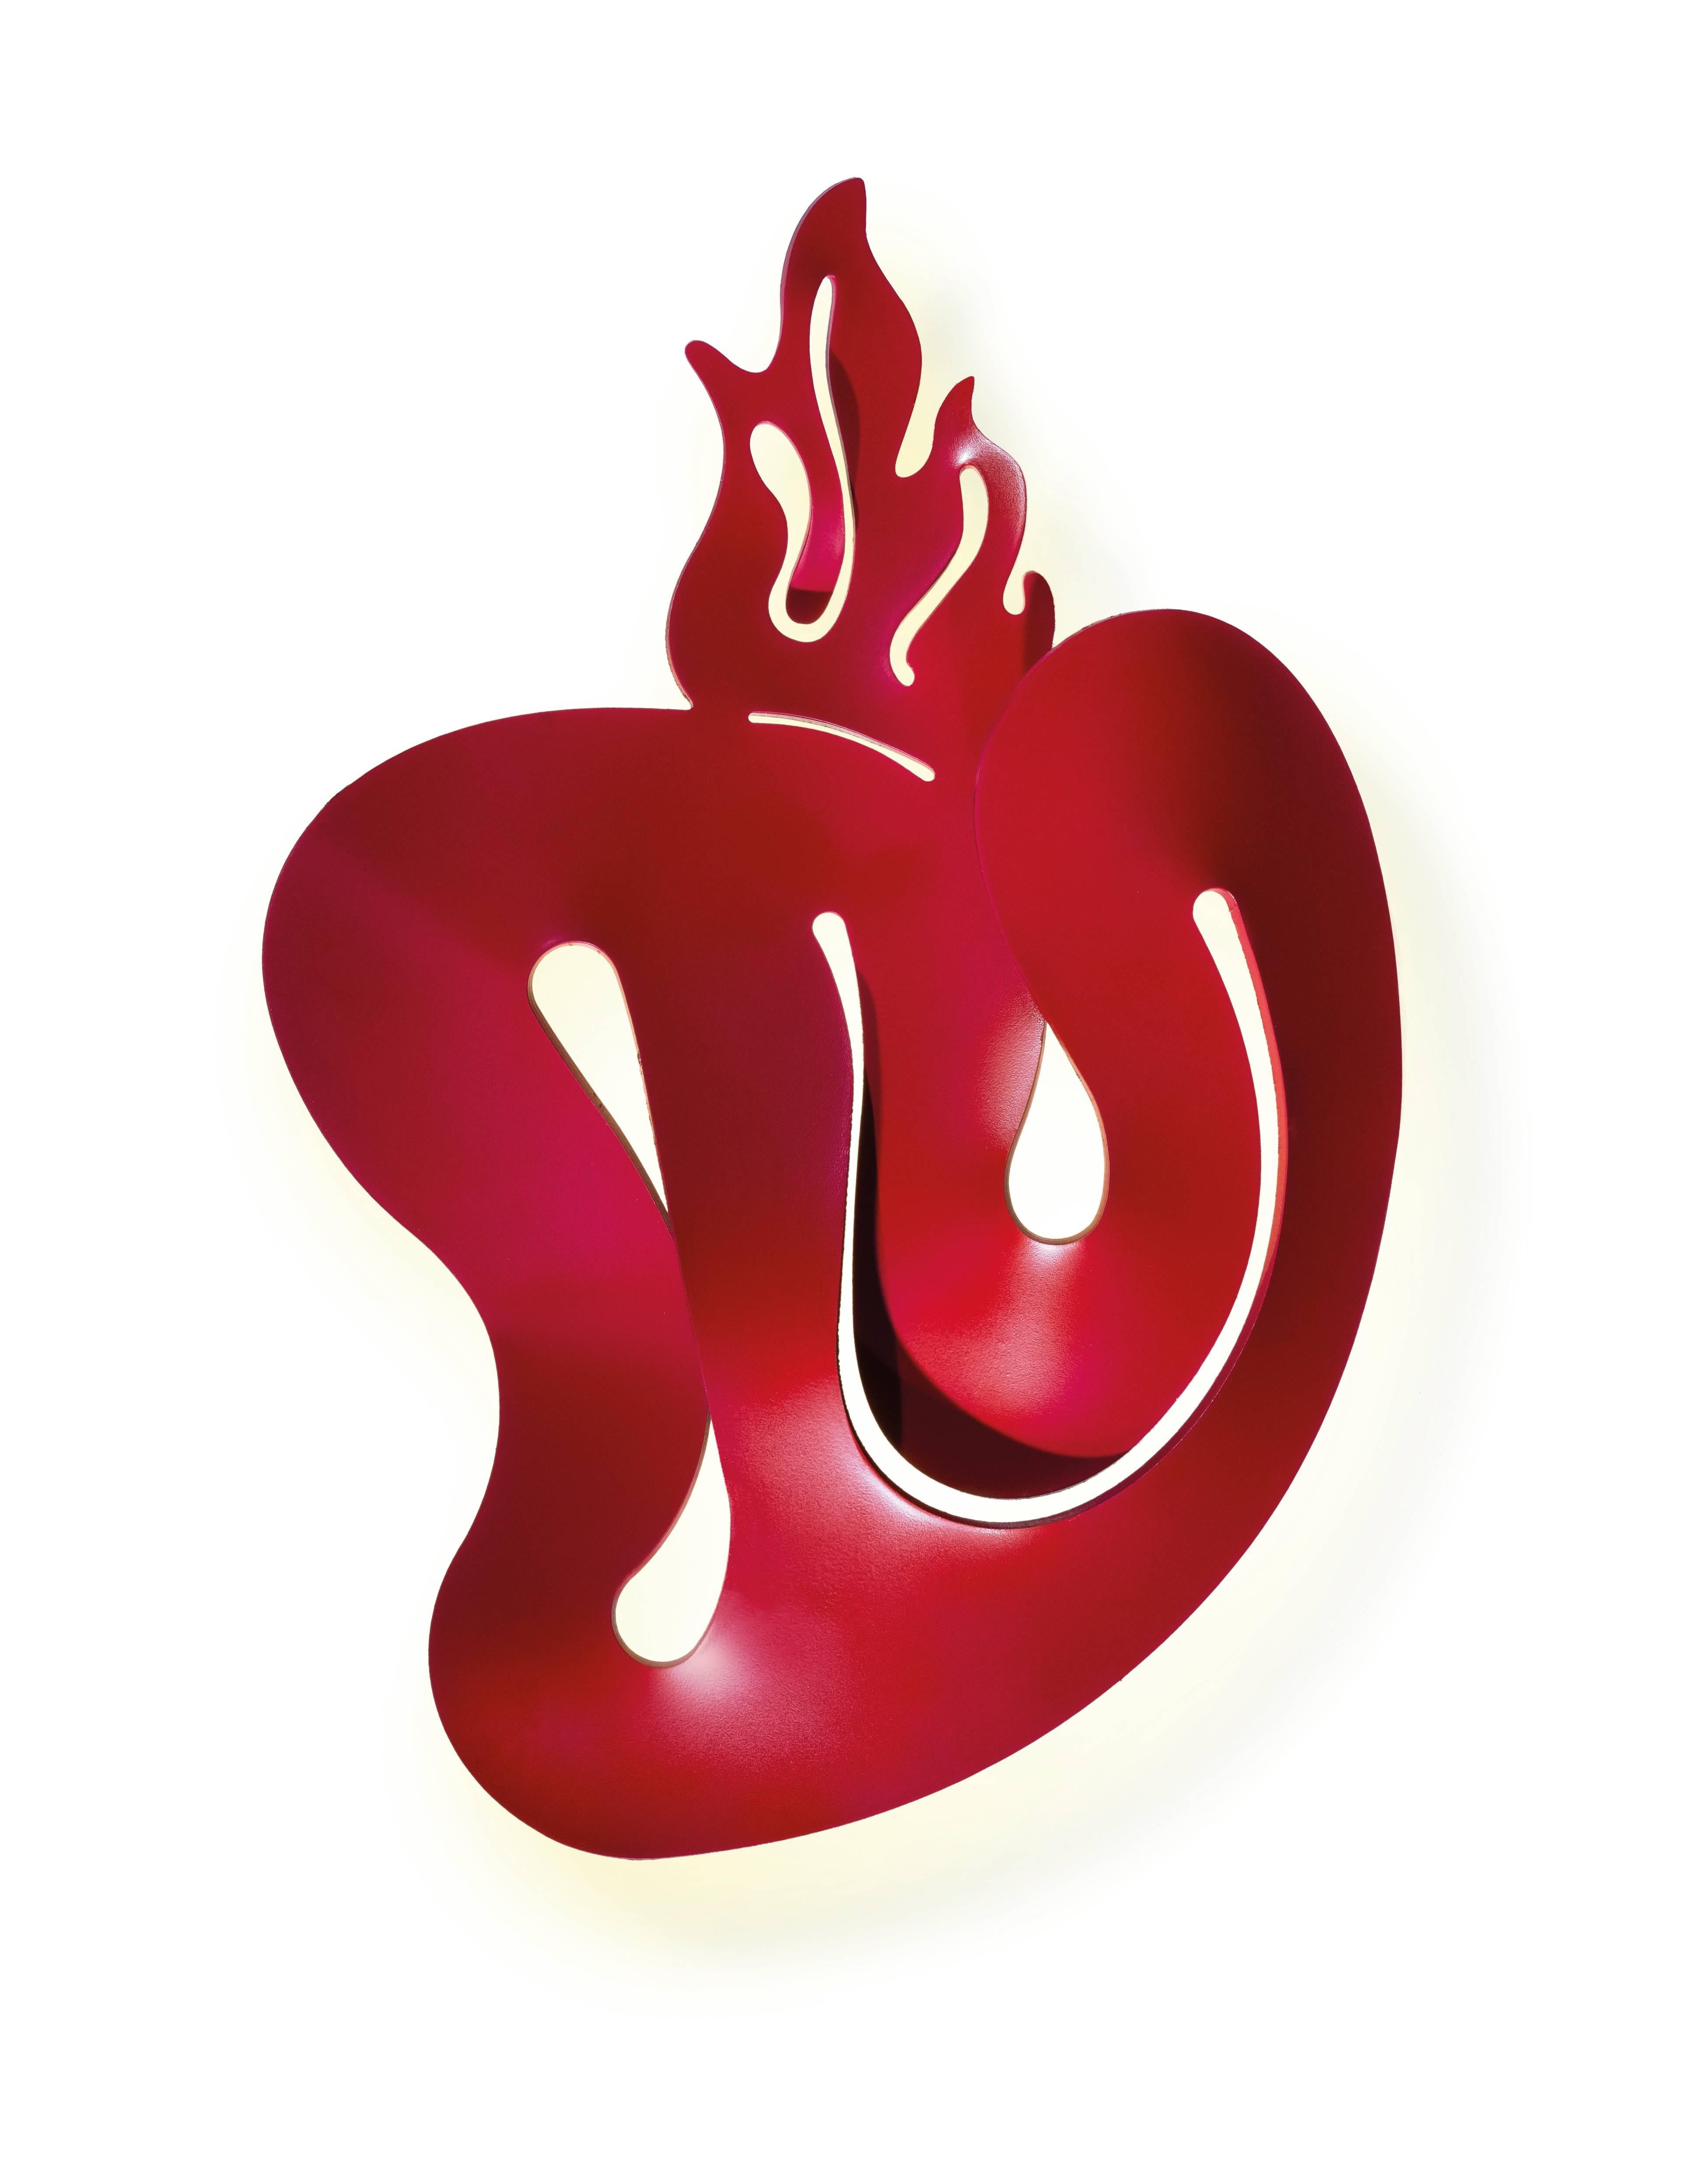 Cuore ist ein brennendes Herz in tiefem Rot und symbolisiert Treue, Hingabe und Leidenschaft. Als Teil der Illuminati-Kollektion interpretiert Coates die Symbole der Vorfahren neu, um eine Kollektion von Wandlampen für die intimsten Bereiche Ihres